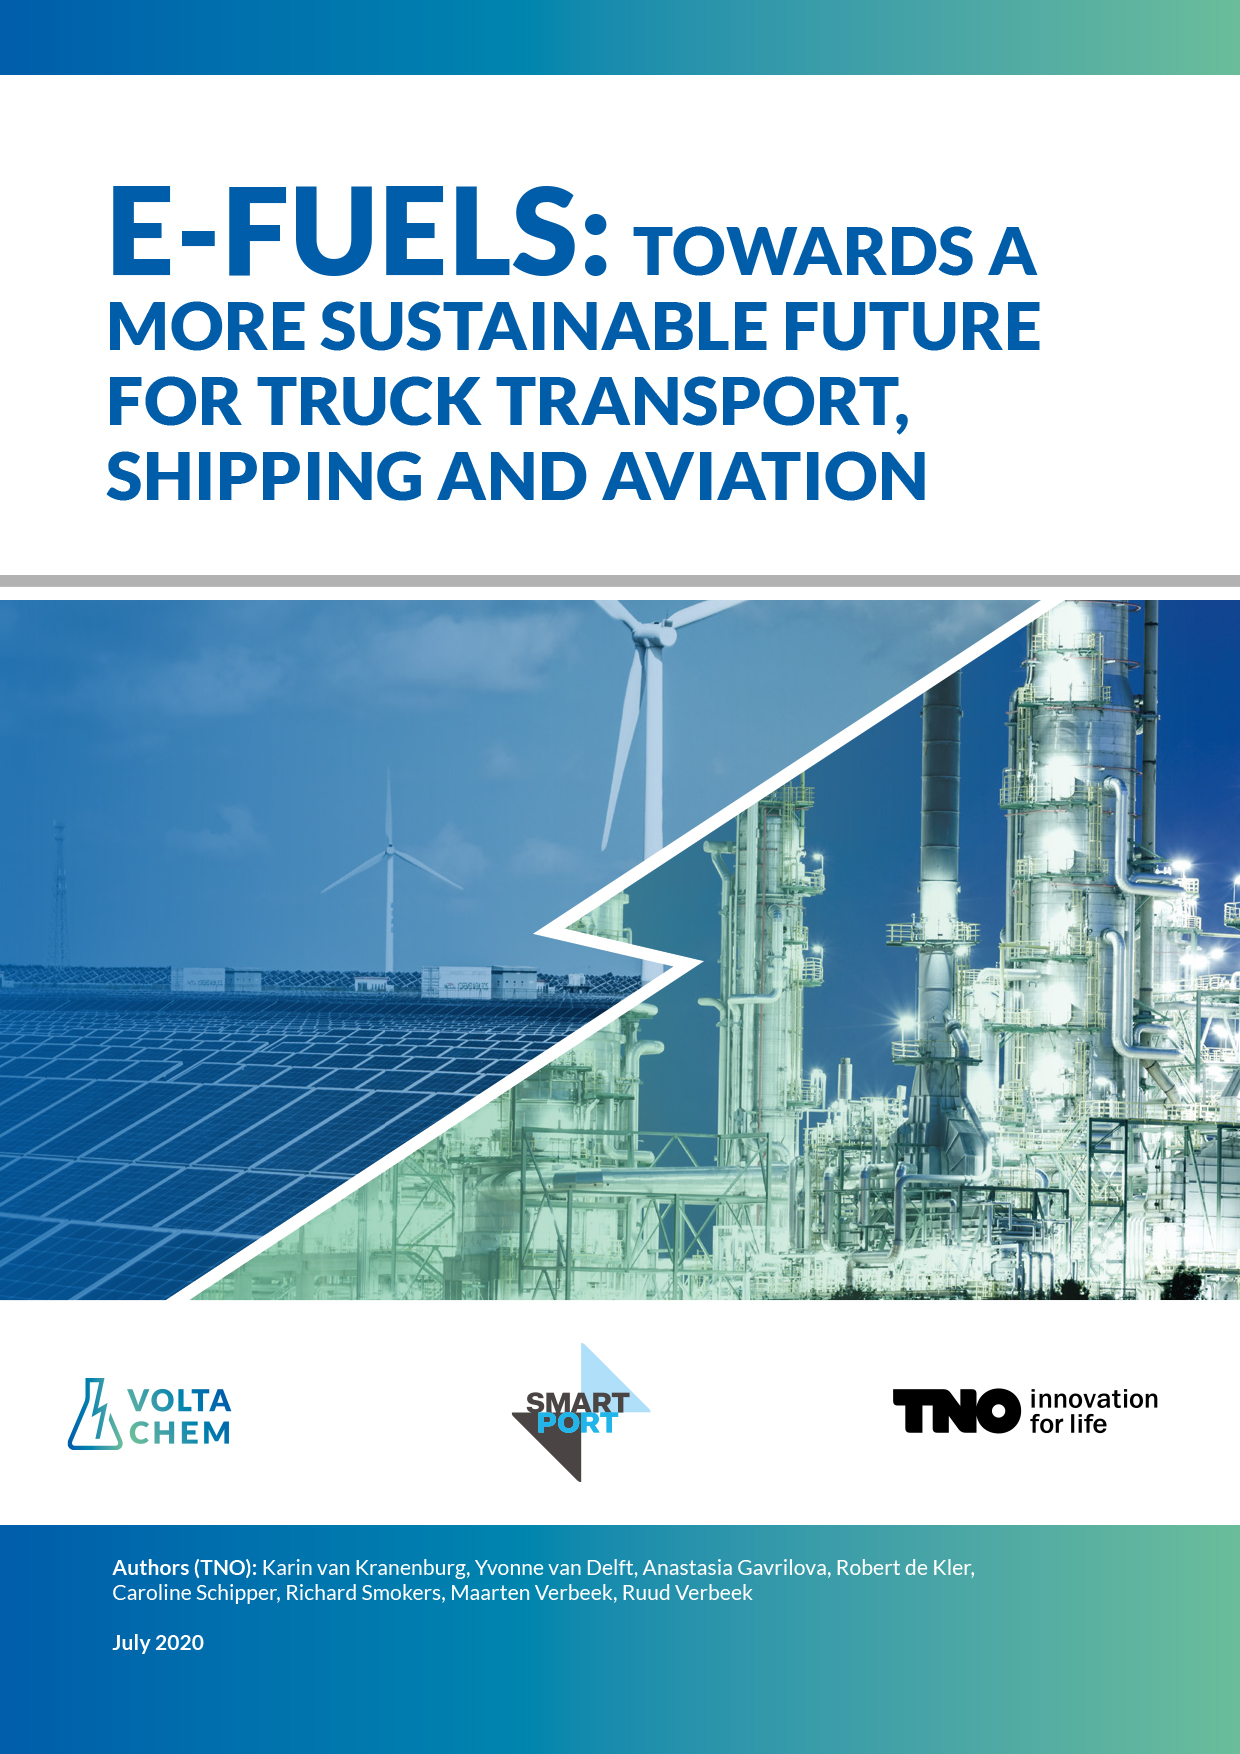 Cover van het whitepaper "E-fuels: towards a more sustainable future for truck transport, shipping and aviation", met zonnepanelen en chemische fabriek als beeld